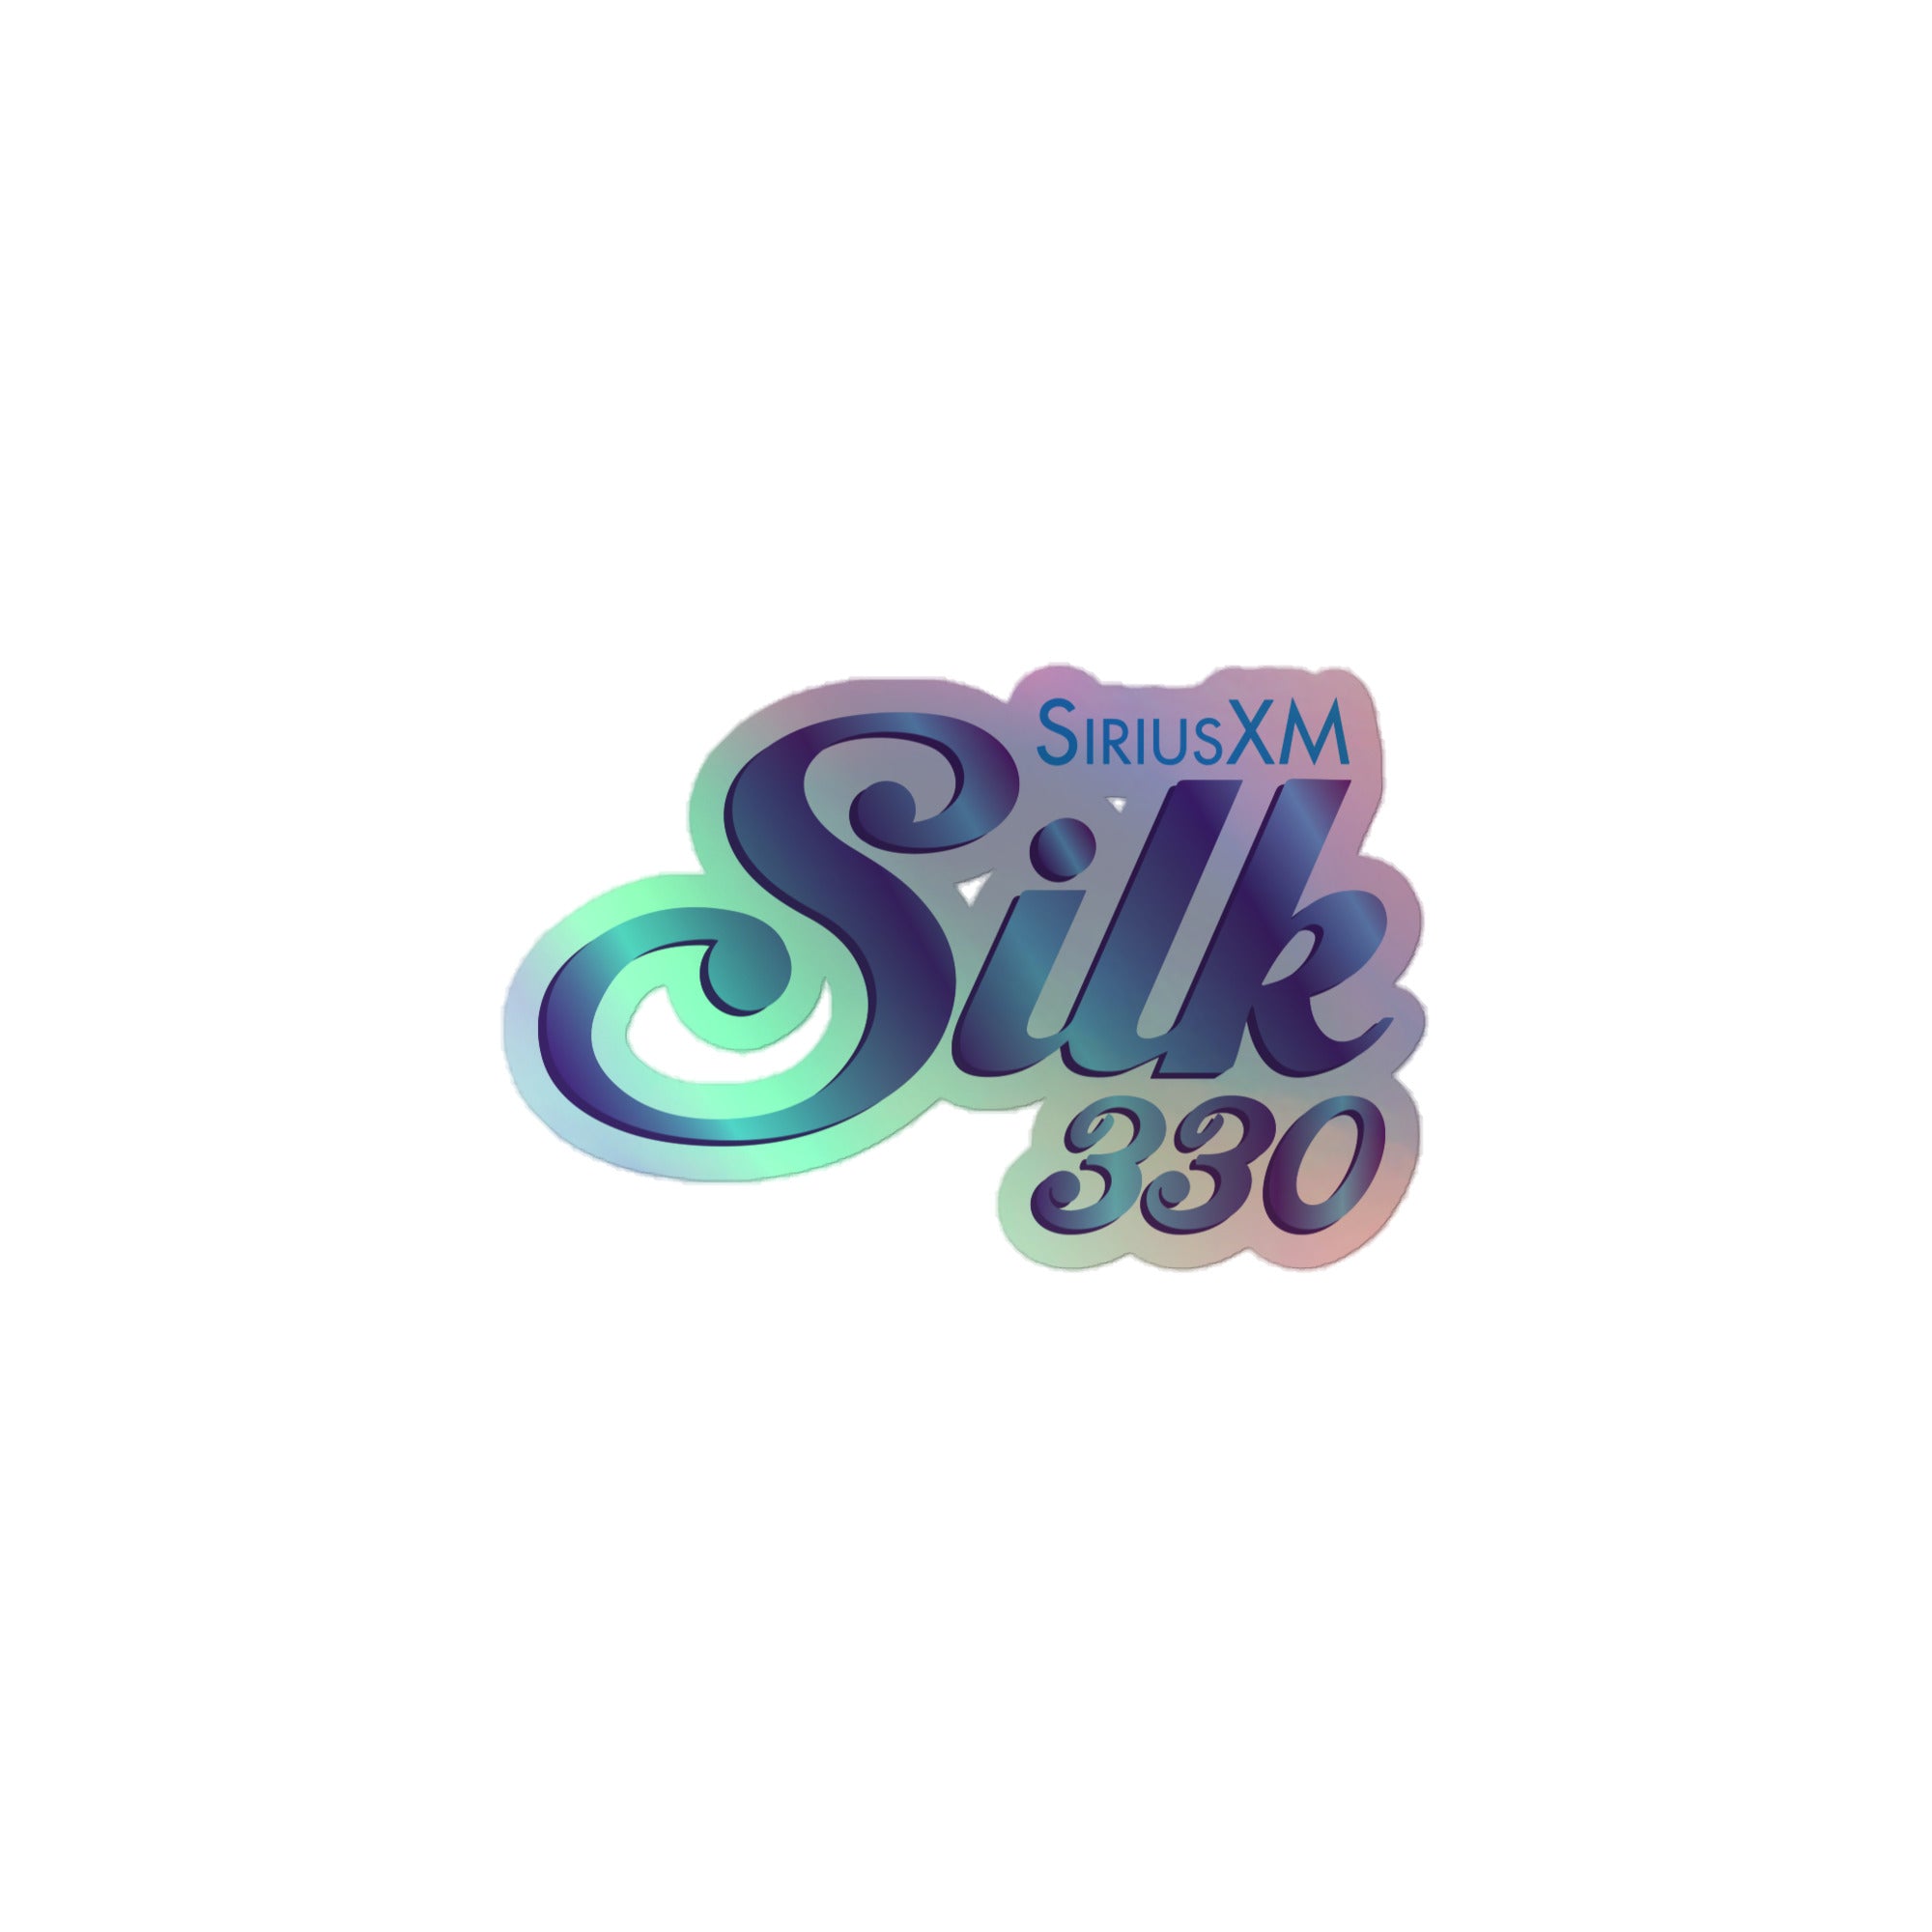 SiriusXM Silk: Holographic Sticker